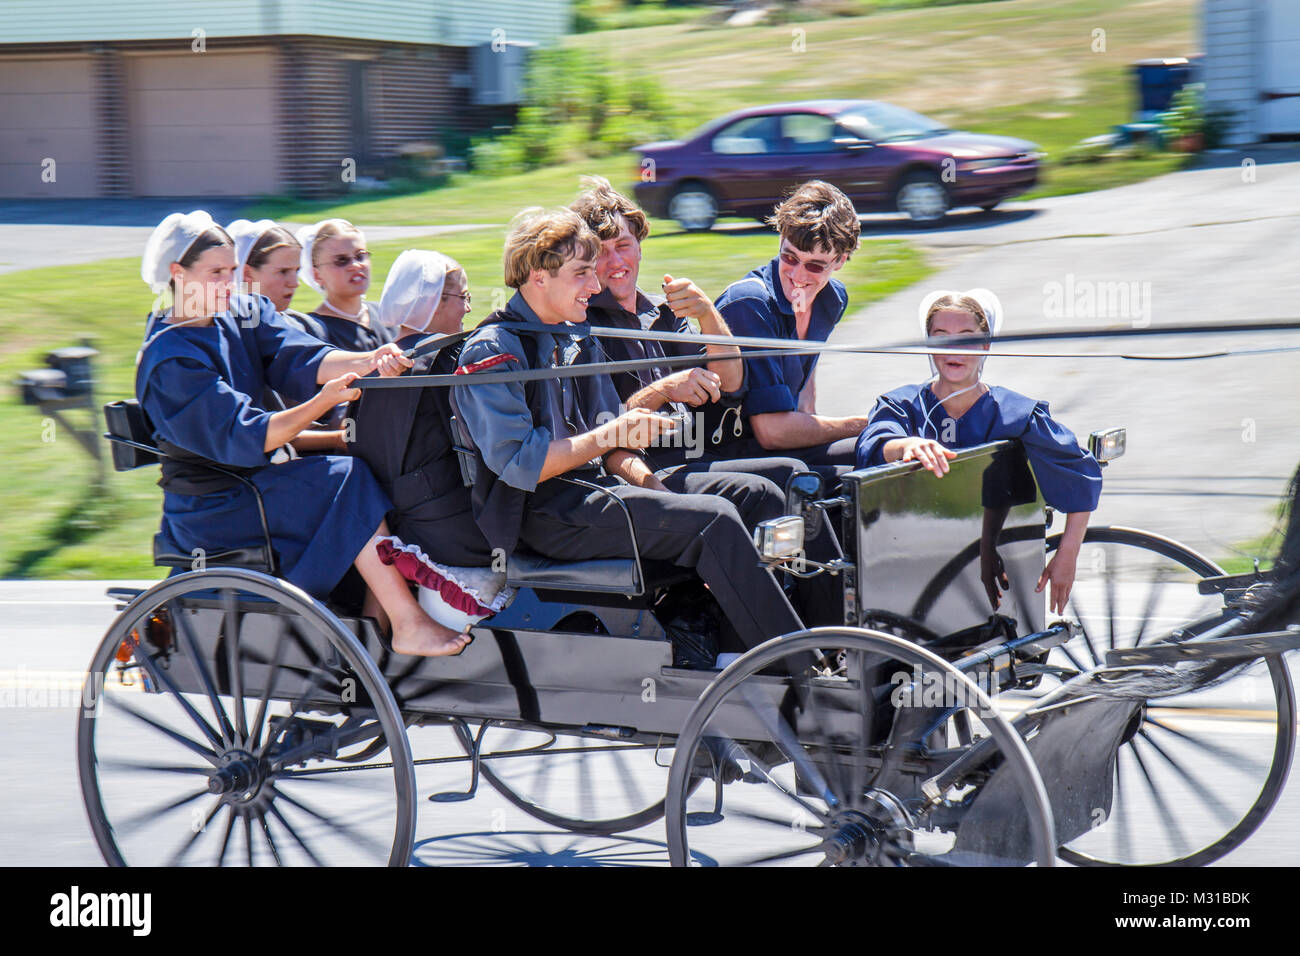 Strasburg Pennsylvania, Amish Pferdewagen, Mädchen weibliche Jungen männliche Teenager Jugendliche rumspringa, rasend riskantes rebellisches Verhalten umwerben Stockfoto